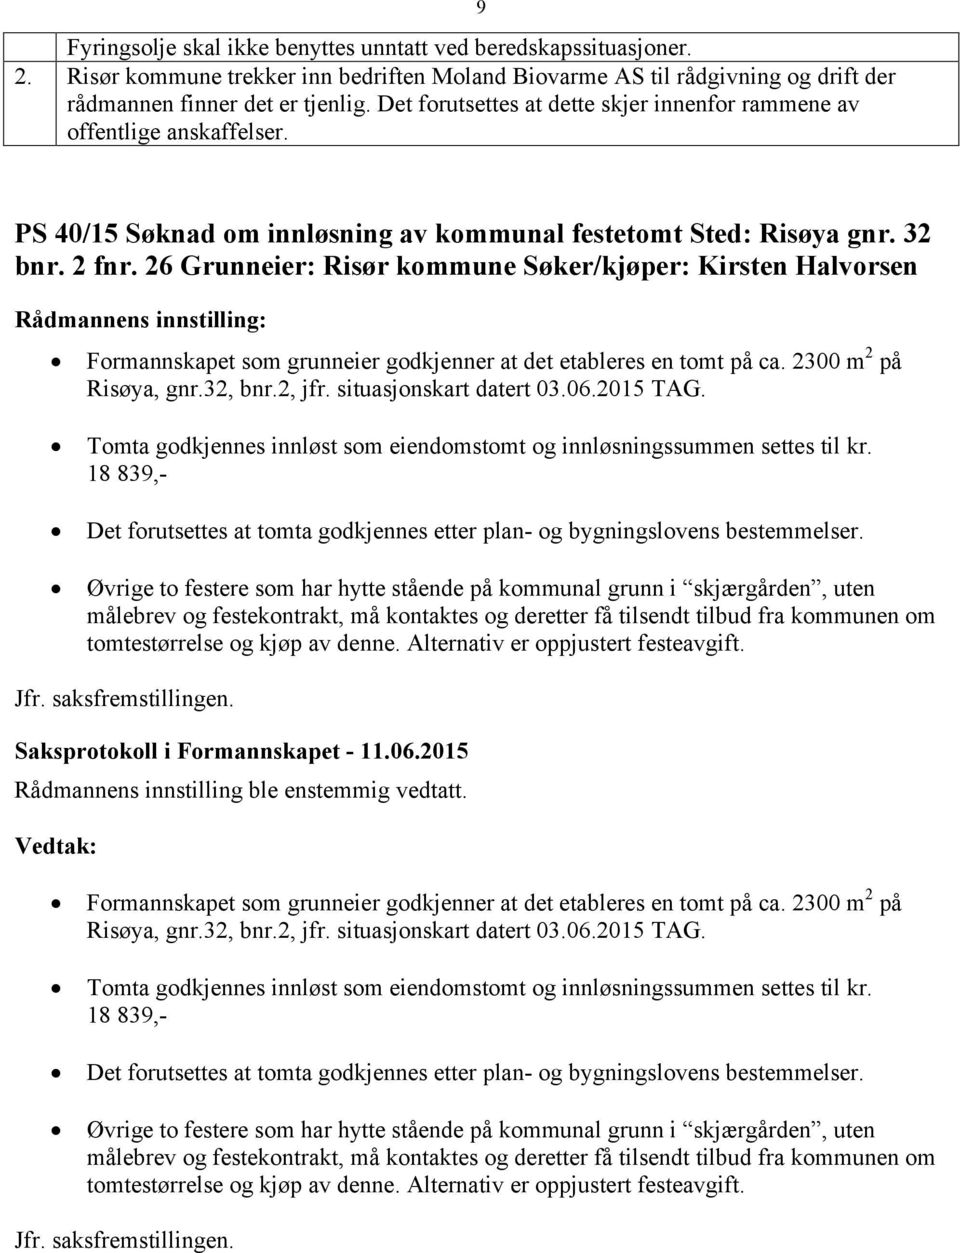 26 Grunneier: Risør kommune Søker/kjøper: Kirsten Halvorsen Formannskapet som grunneier godkjenner at det etableres en tomt på ca. 2300 m 2 på Risøya, gnr.32, bnr.2, jfr. situasjonskart datert 03.06.